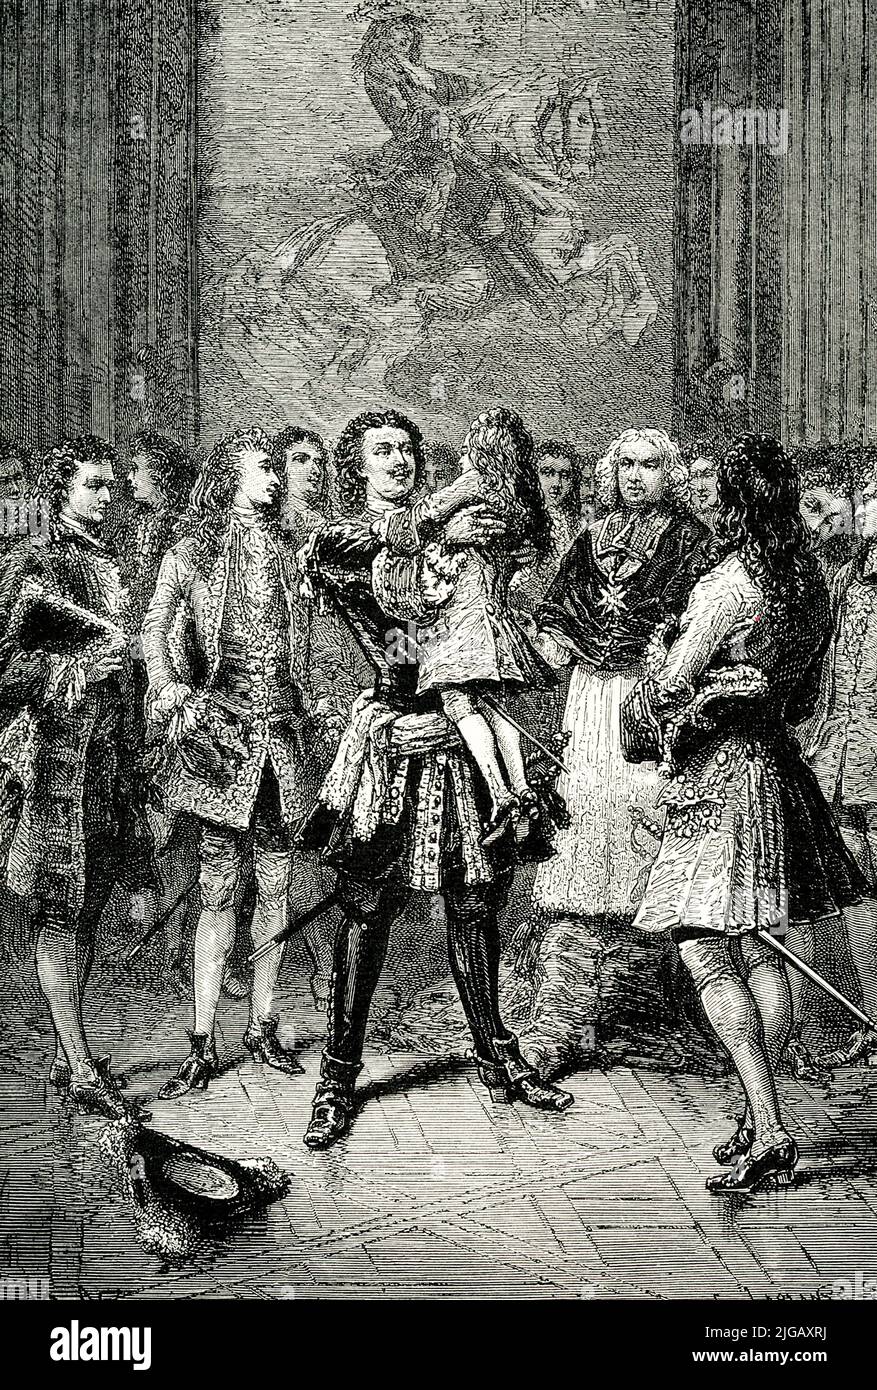 La légende de 1906 lit " PETER EMBRASSANT LOUIS XV DE FRANCE.—lors de ses voyages en Europe, Pierre est venu à la cour française [c'était en 1717] où le roi Louis XV était encore enfant. Pierre a soigneusement maintenu la dignité de rang supérieur envers tous les courtisans français, même le Prince Regent ; mais vers le petit Louis, il a montré un mélange beaucoup admiré de la supériorité de l'âge, de l'égalité de rang et du respect dû au plus puissant des monarques européens. » Banque D'Images